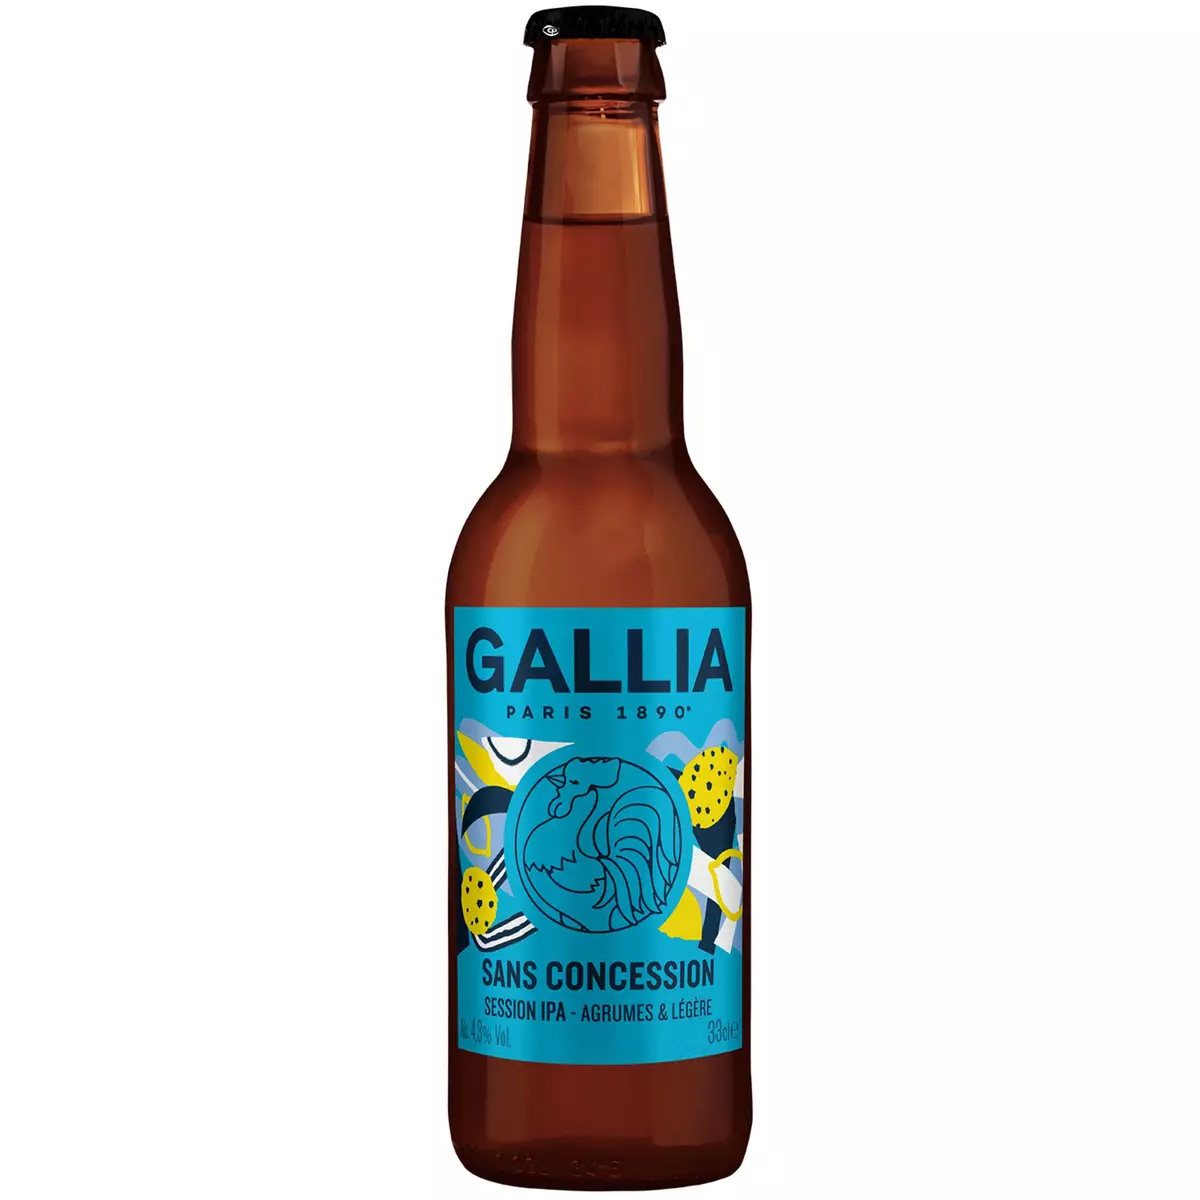 GALLIA Bière blonde session IPA 4,3% bouteille 33cl